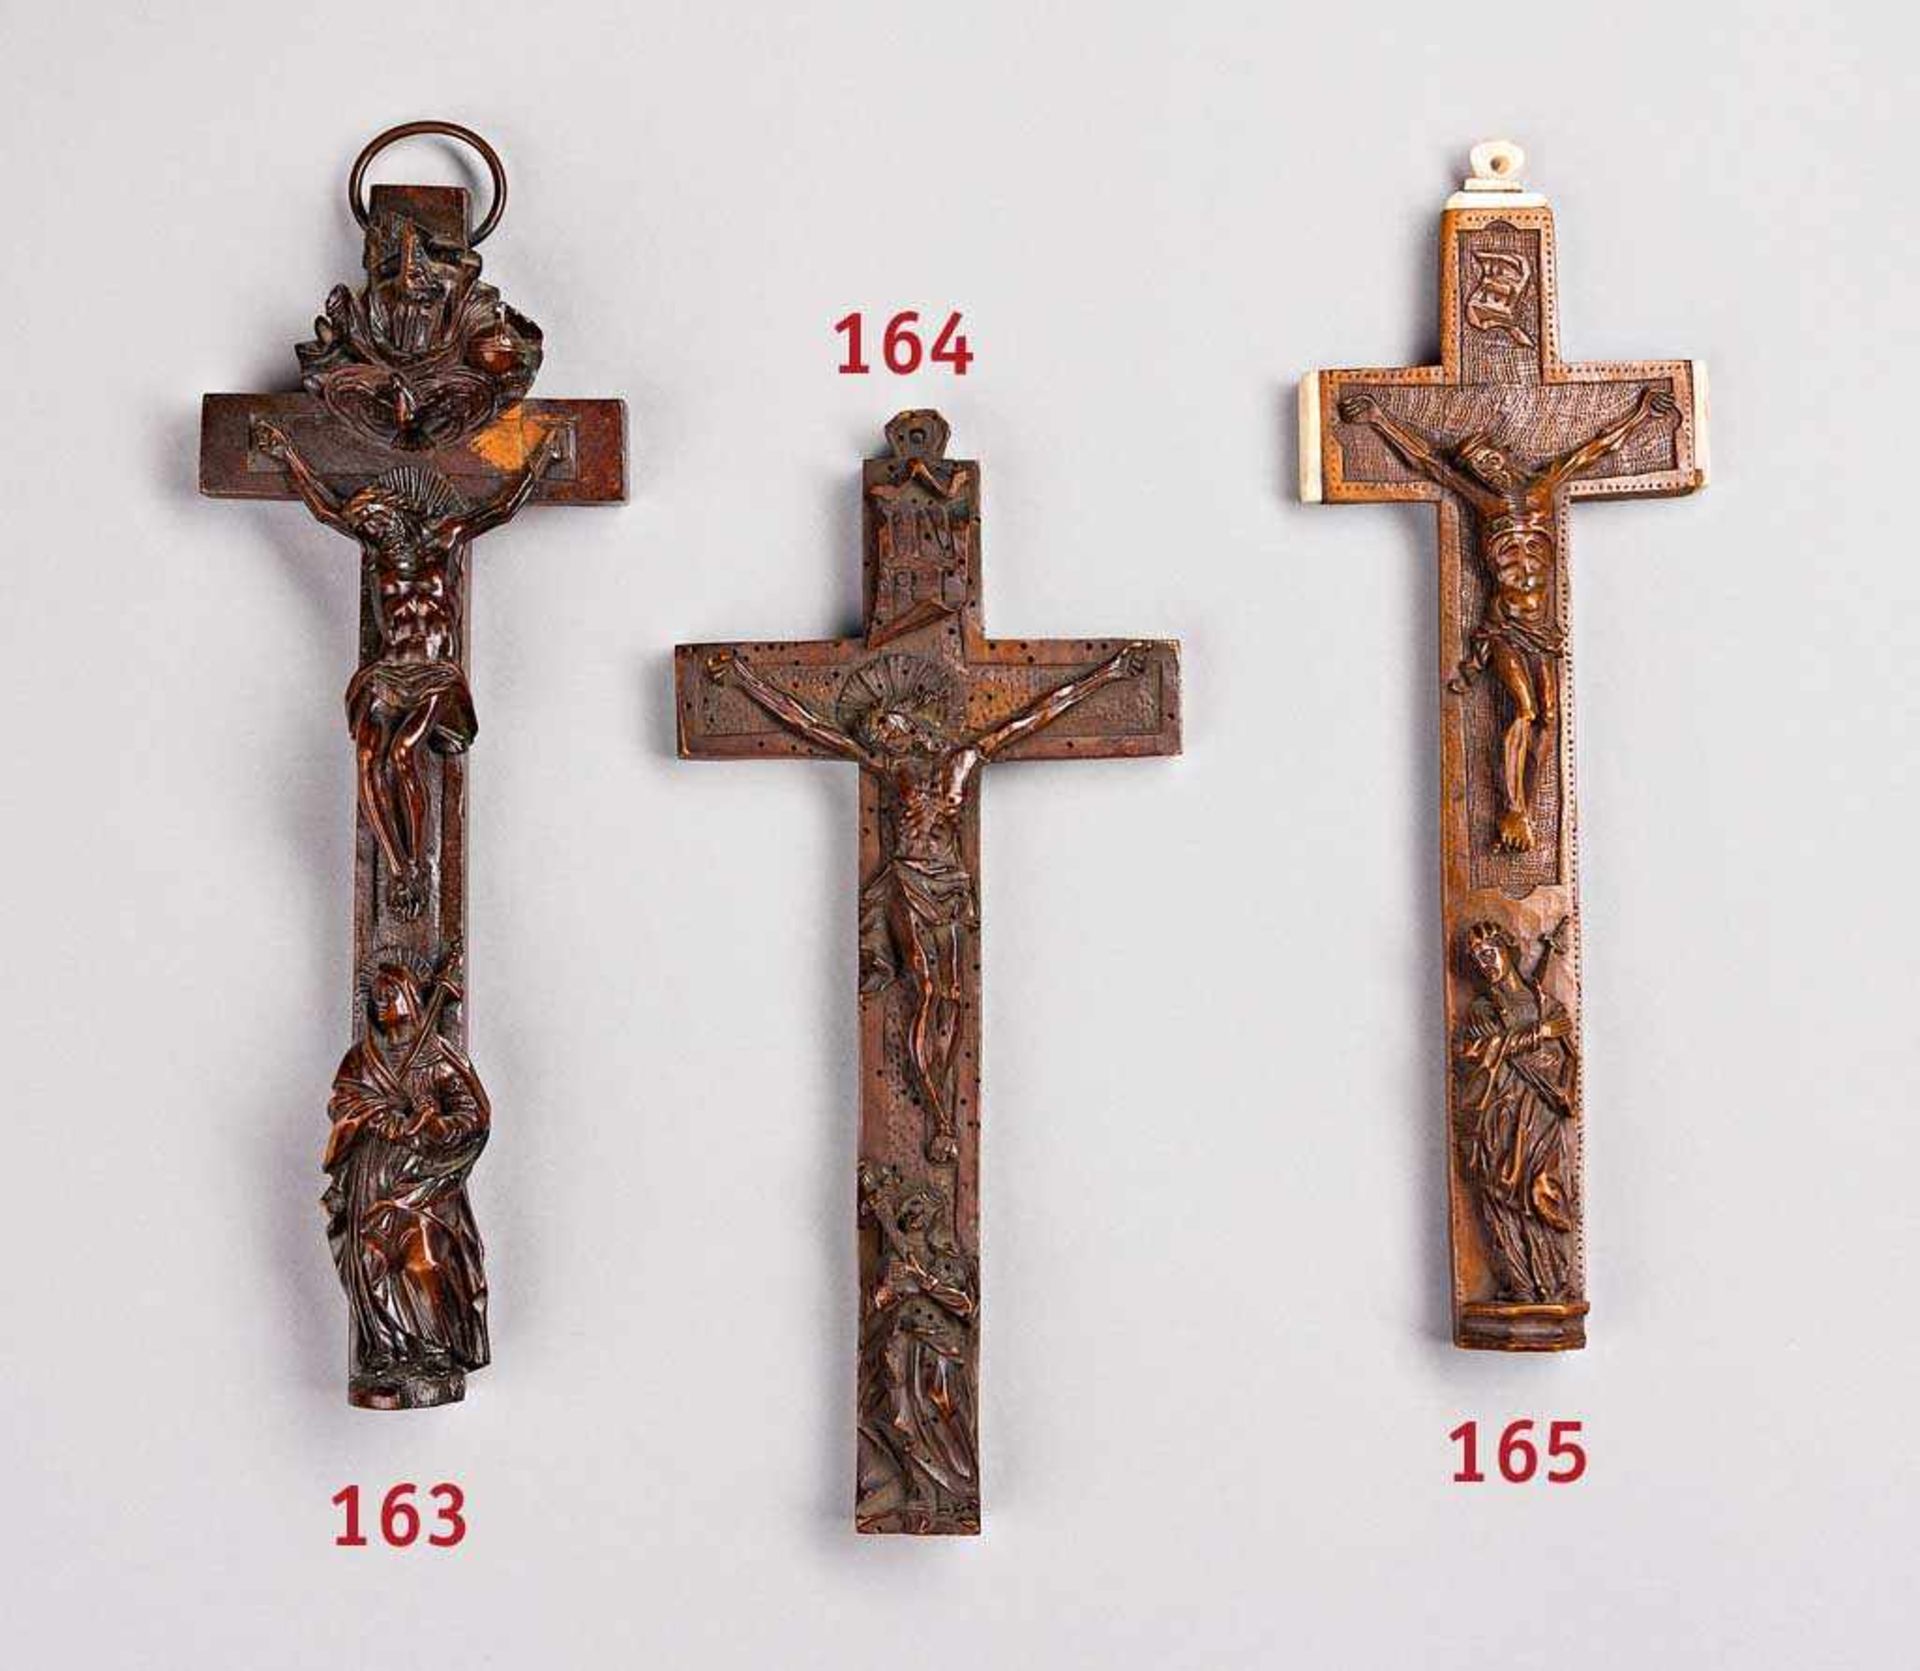 Barockes Reliquienkreuz. Rs. Schieber, Reliquien erhalten. Ende 18. Jh. H 26 cm